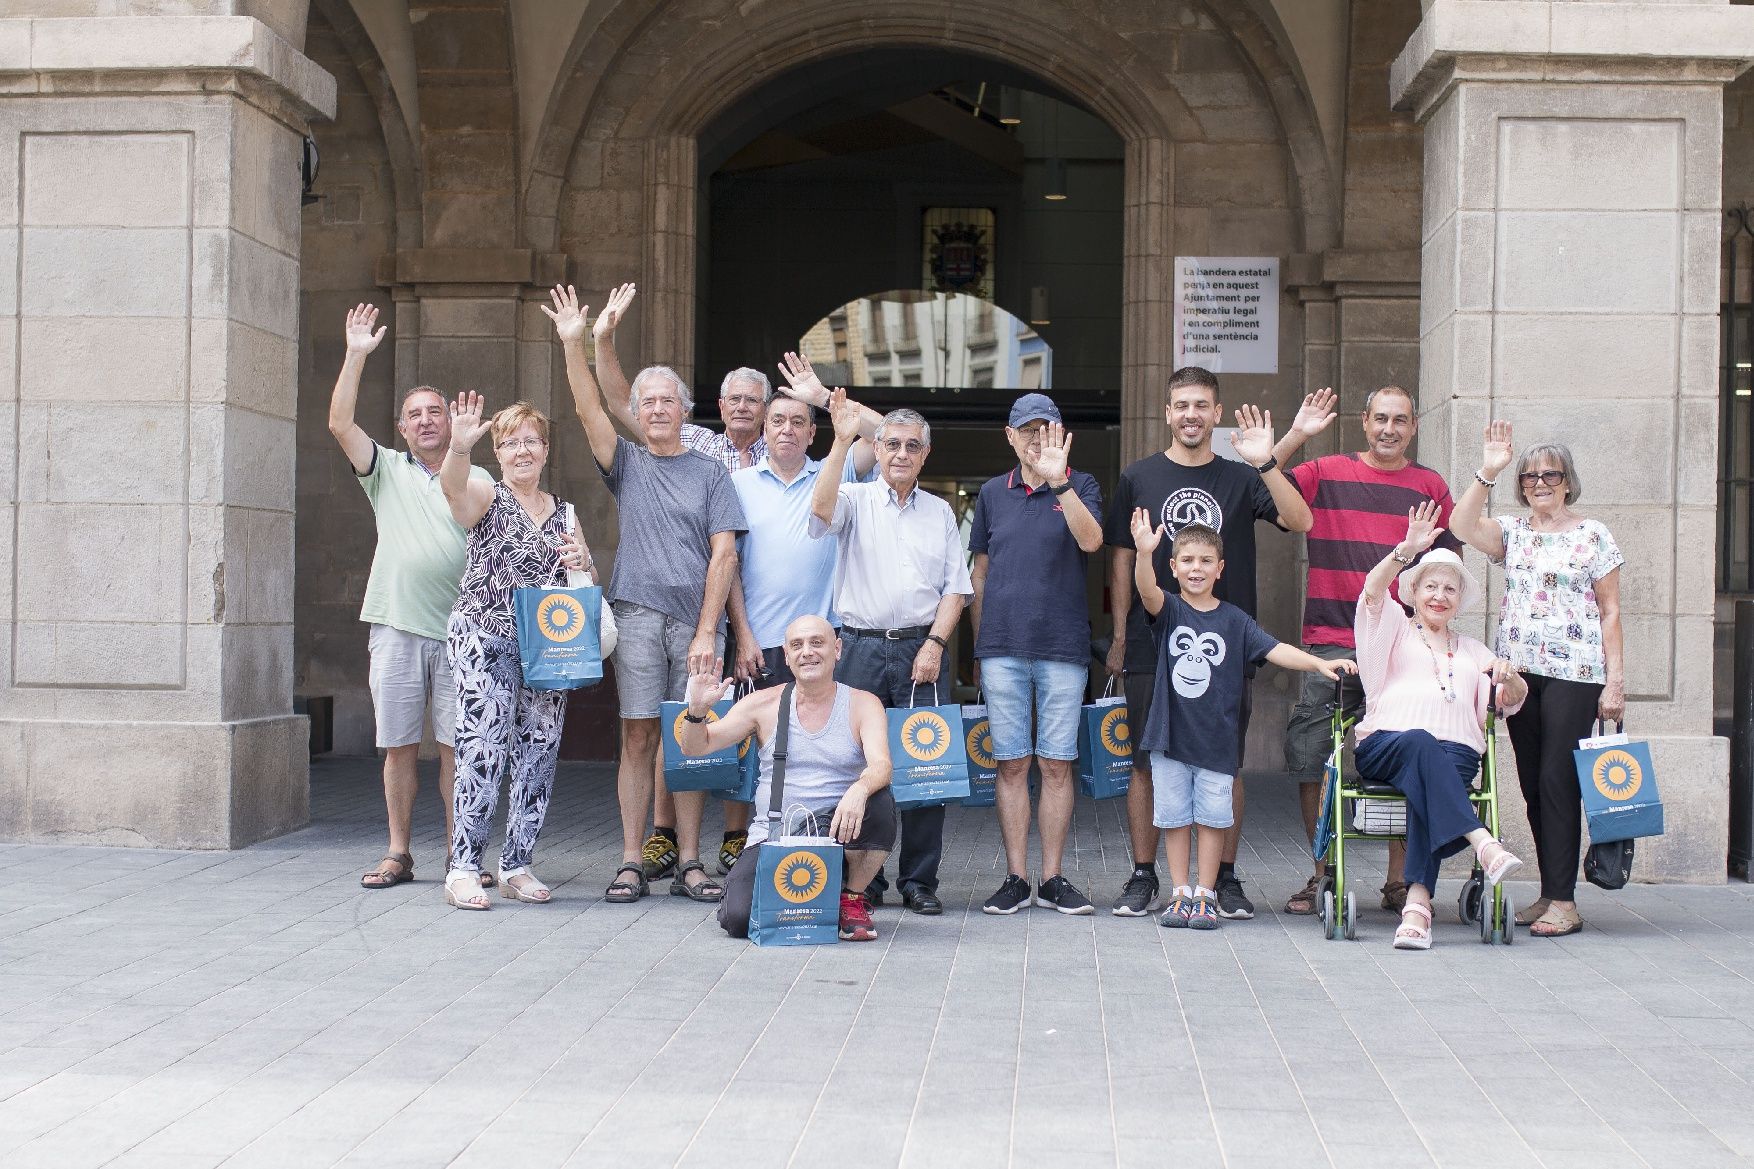 Les festes de Sant Ignasi omplen d'alegria i comunió el centre històric